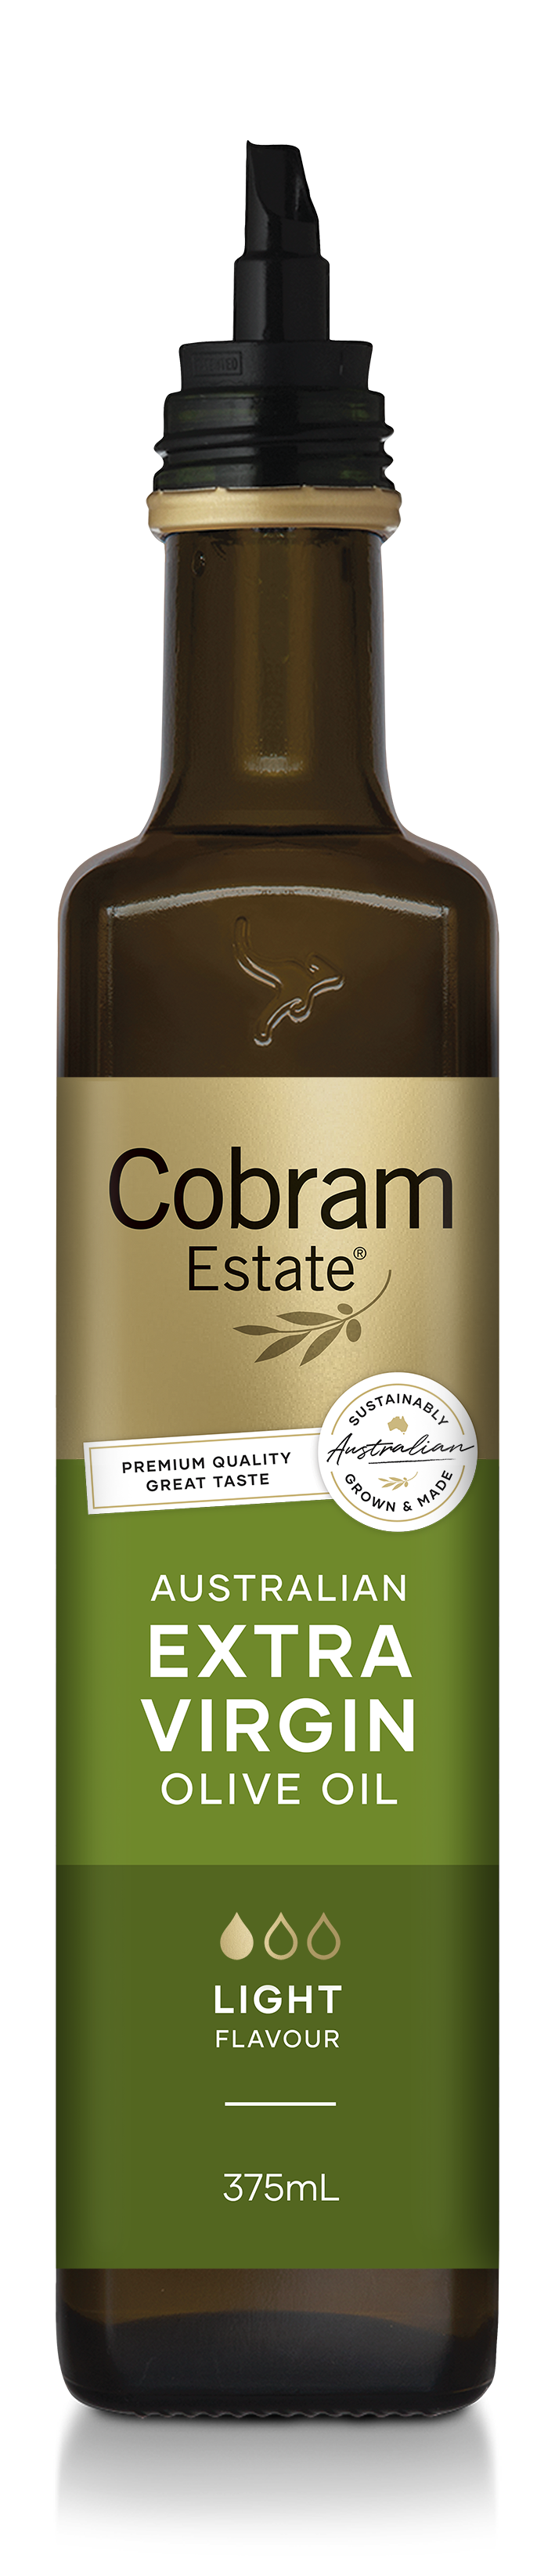 Light Flavour Oil in a 375mL Bottle | Australian Extra Virgin Olive Oil | Cobram Estate AU